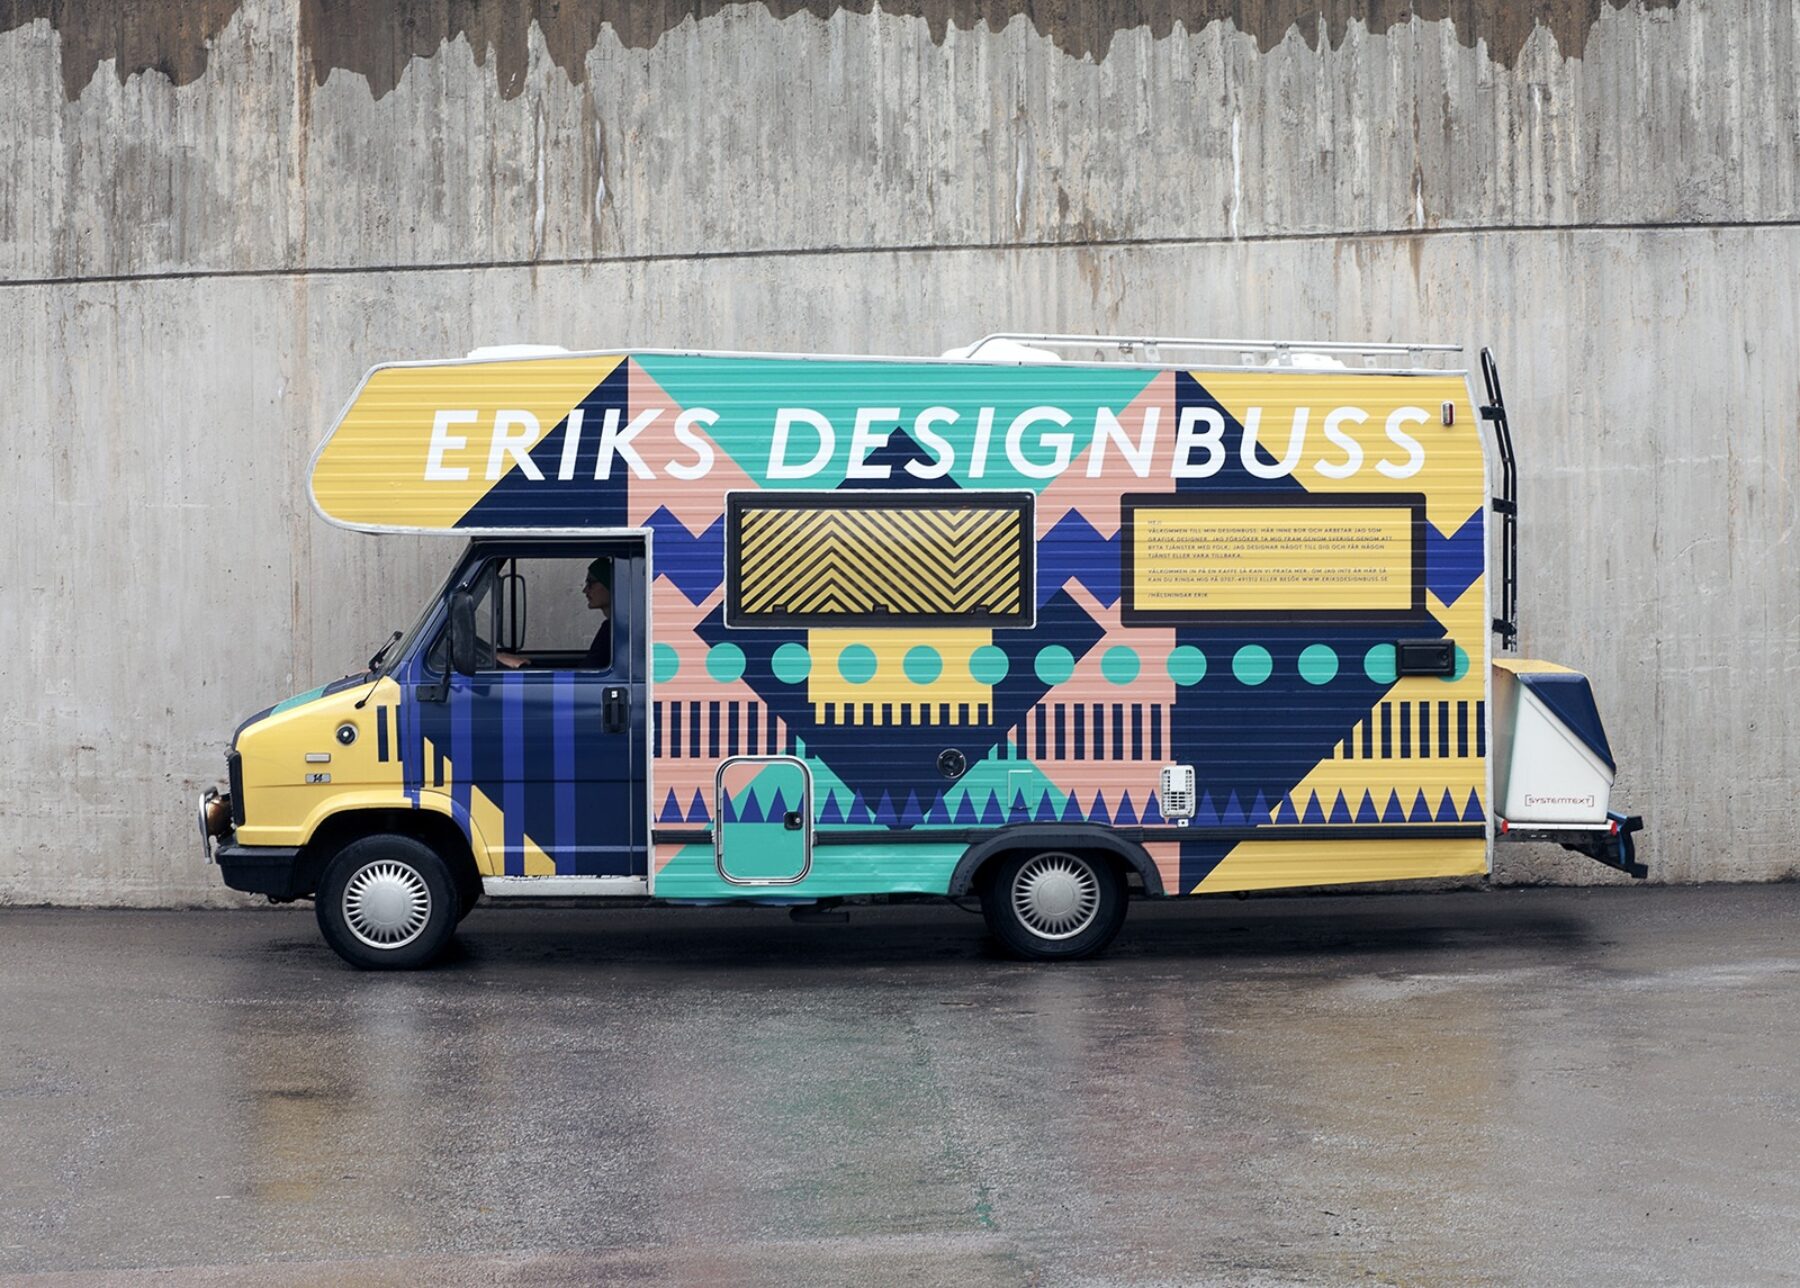 Eriks_Designbuss_01_low